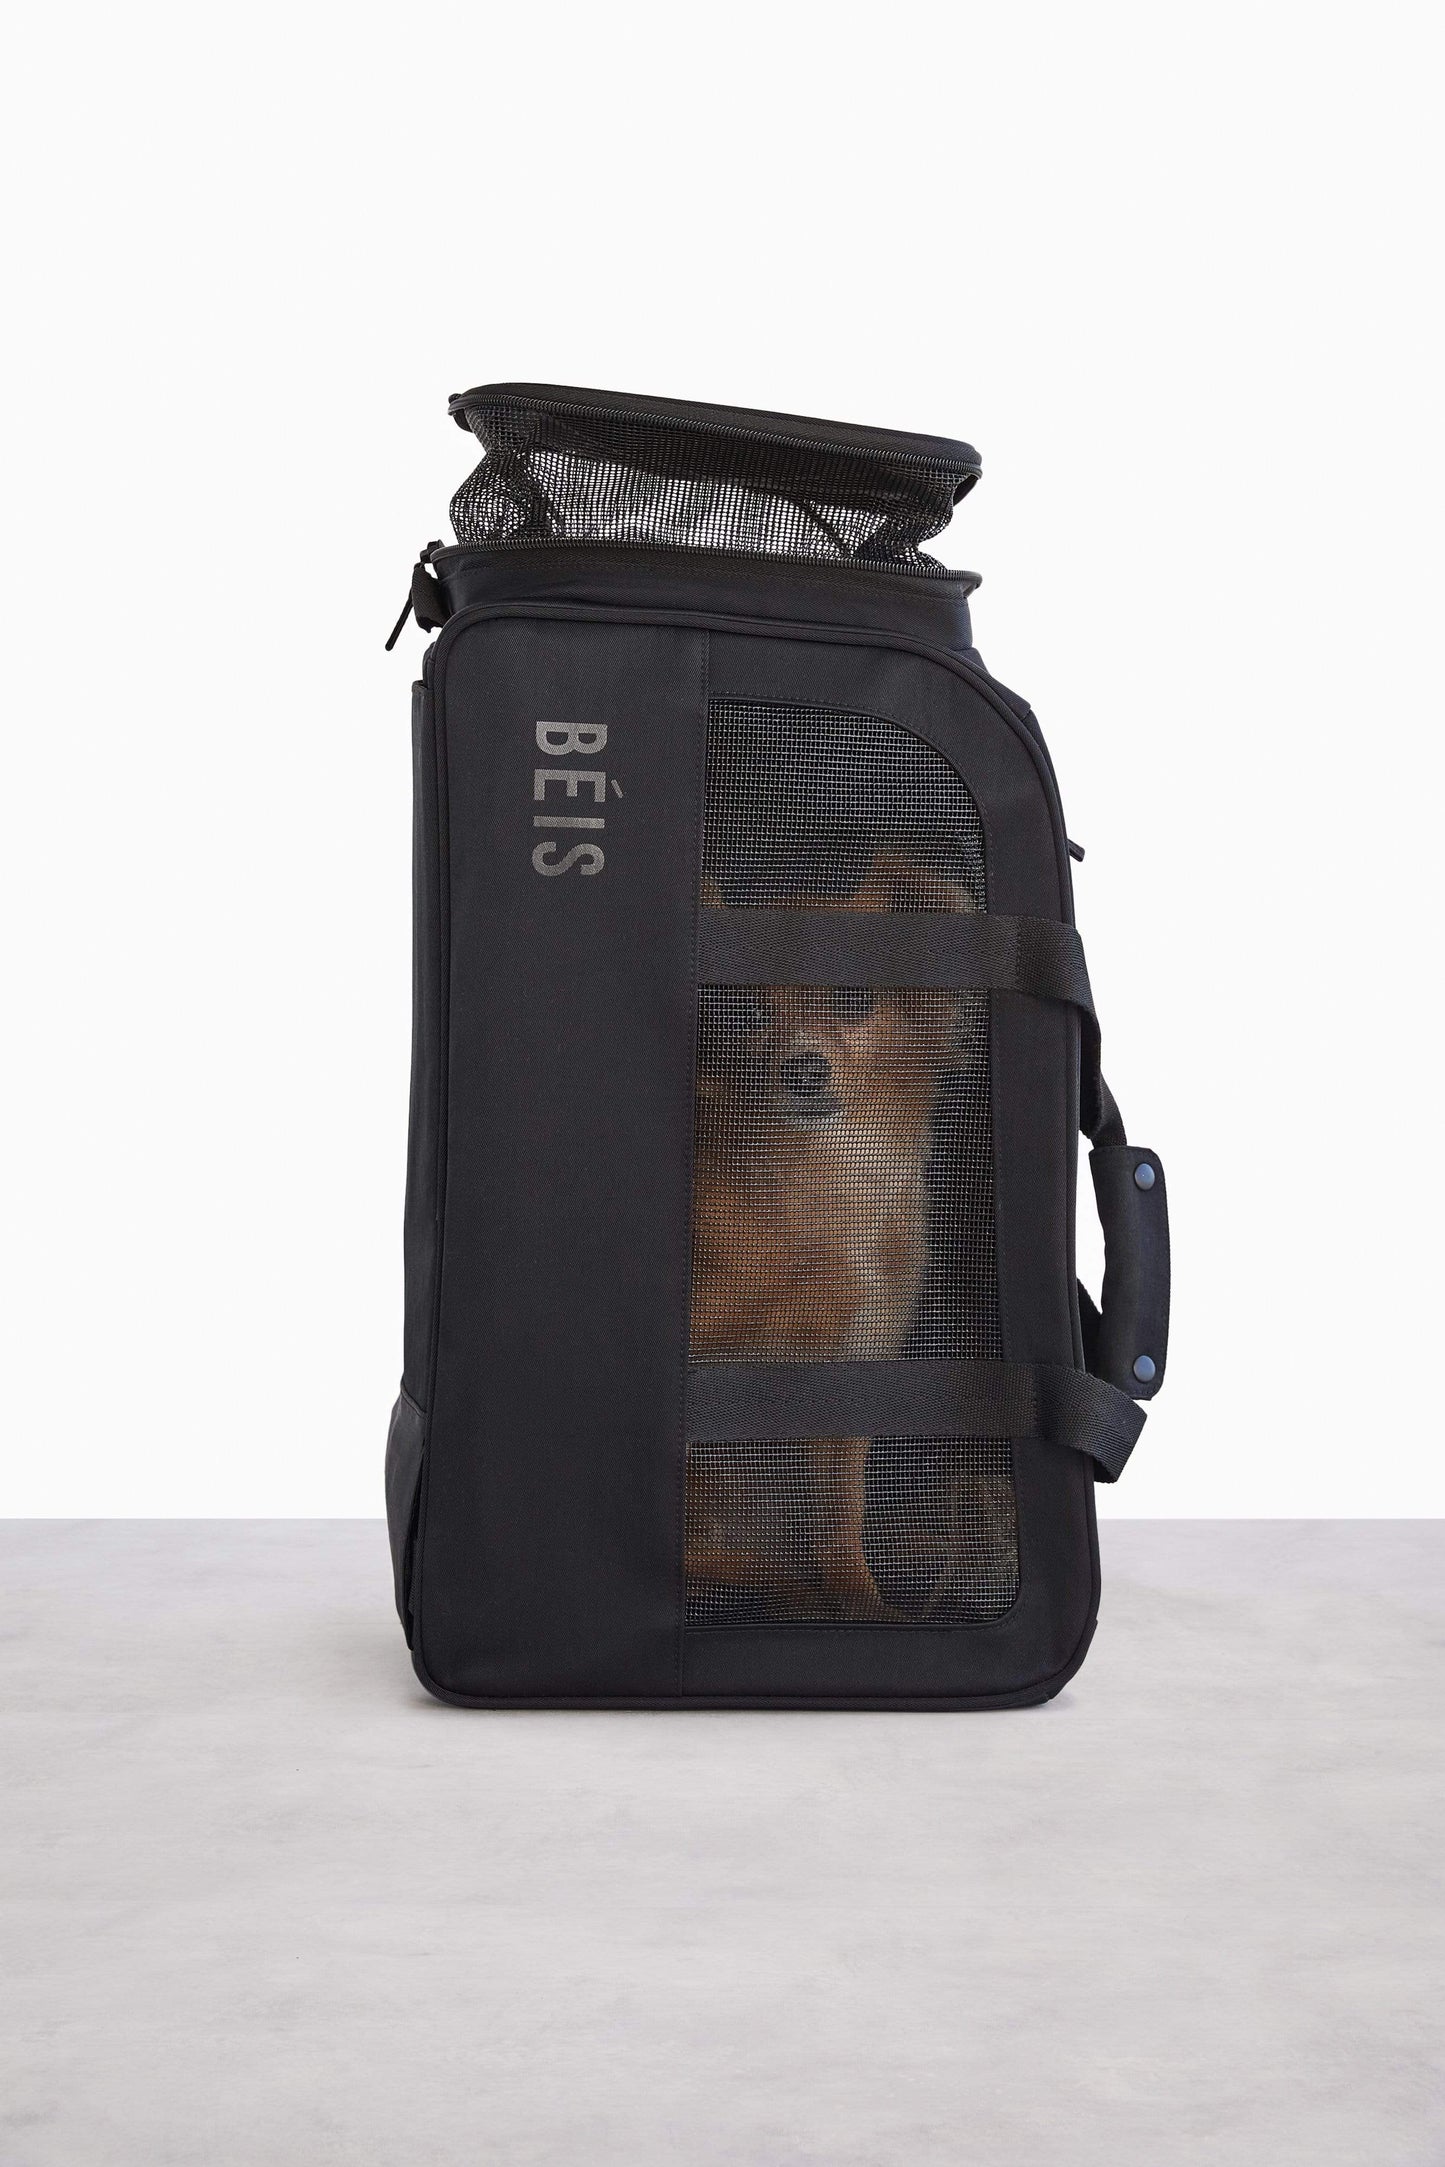 Le sac de voyage Regulation Pet en noir